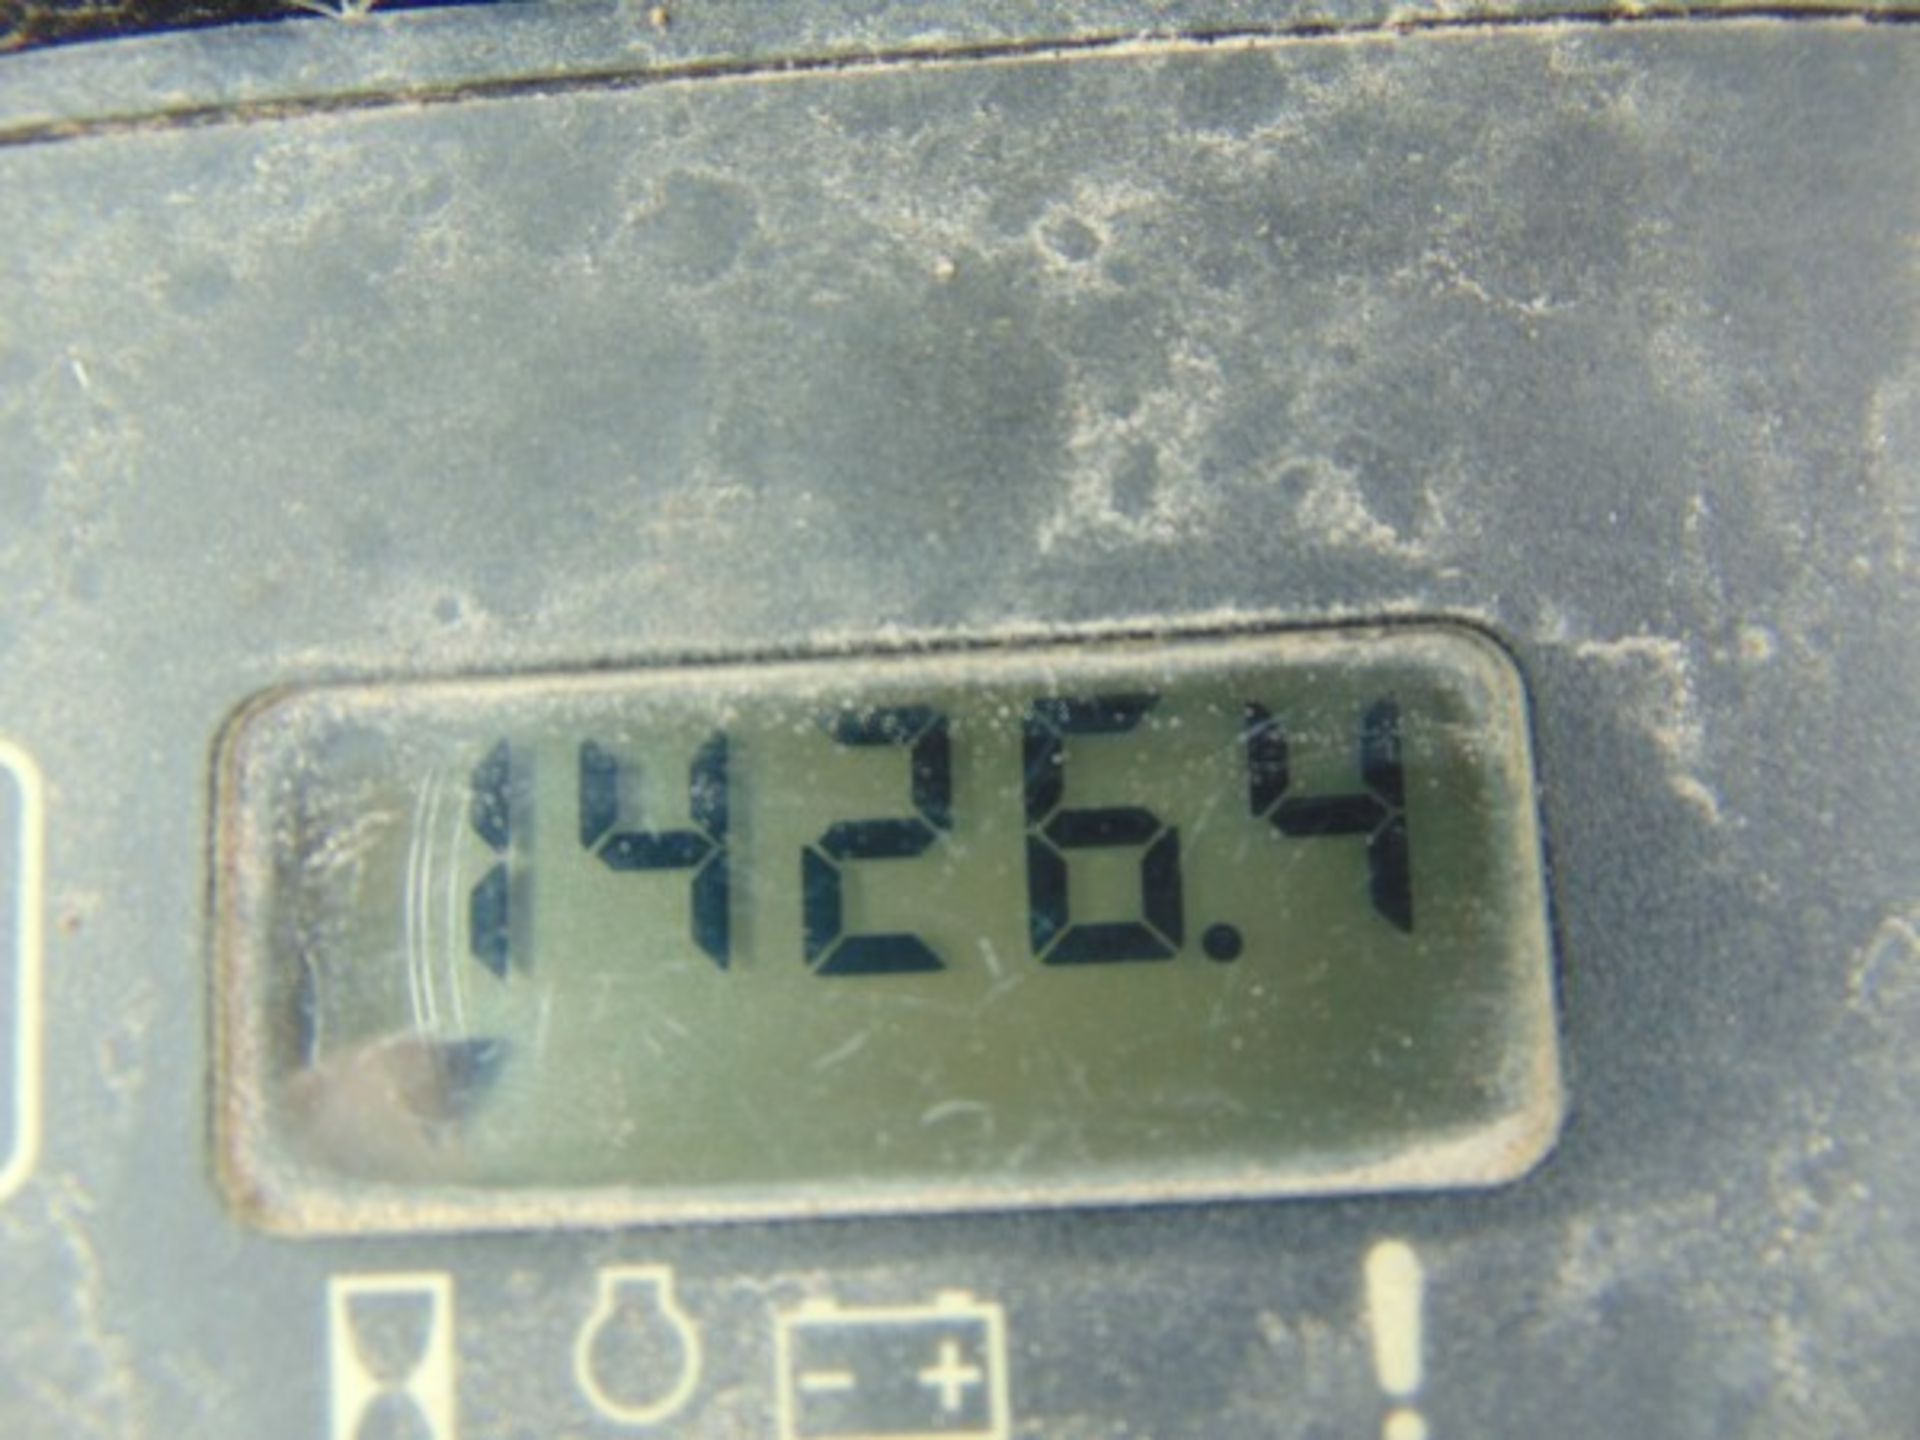 2005 John Deere 310SG Loader Backhoe , s/n 946705, gp loader bkt, cab, 24"hoe bkt, hour meter reads - Image 5 of 5